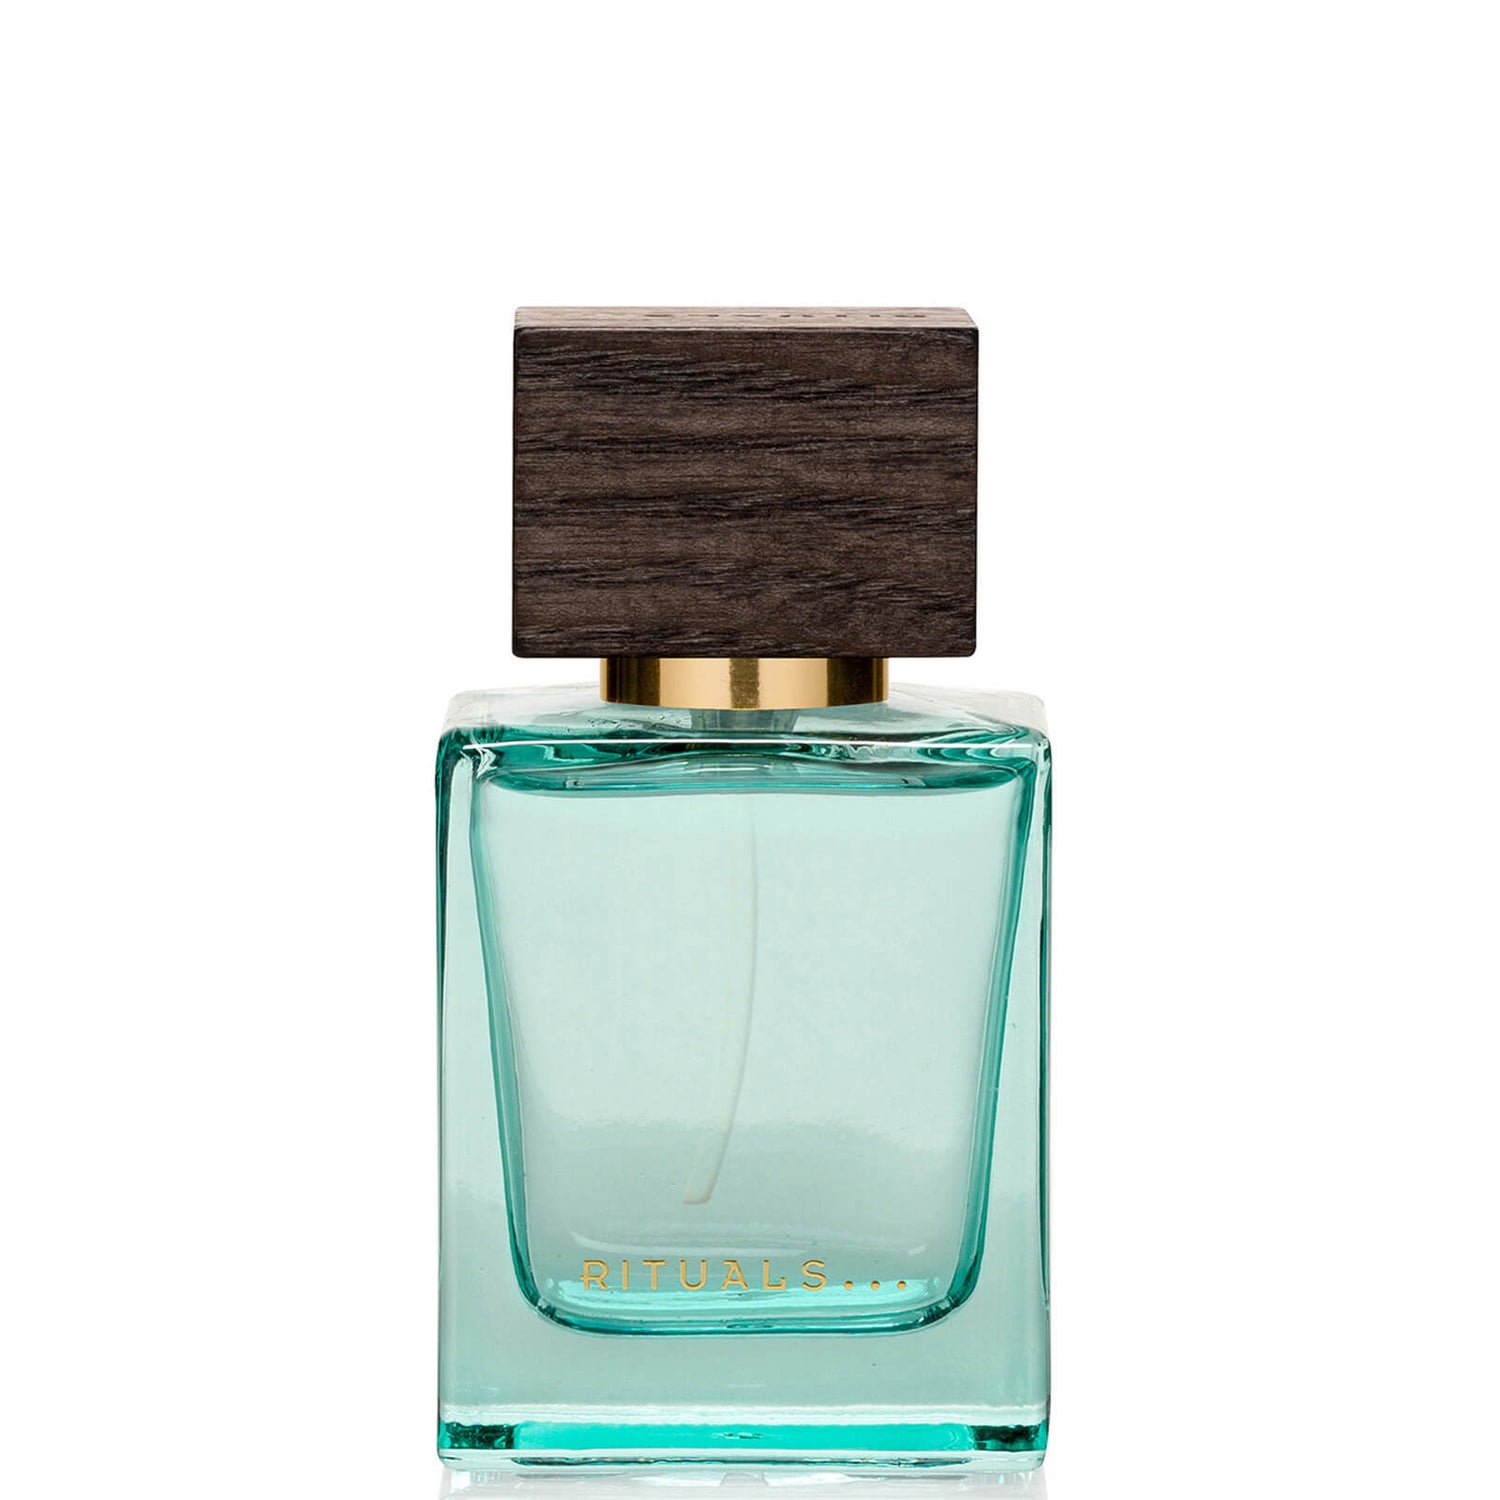 RITUALS Oriental Essences Travel Perfume Nuit d'Azar, eau de parfum i rejsestørrelse 15 ml